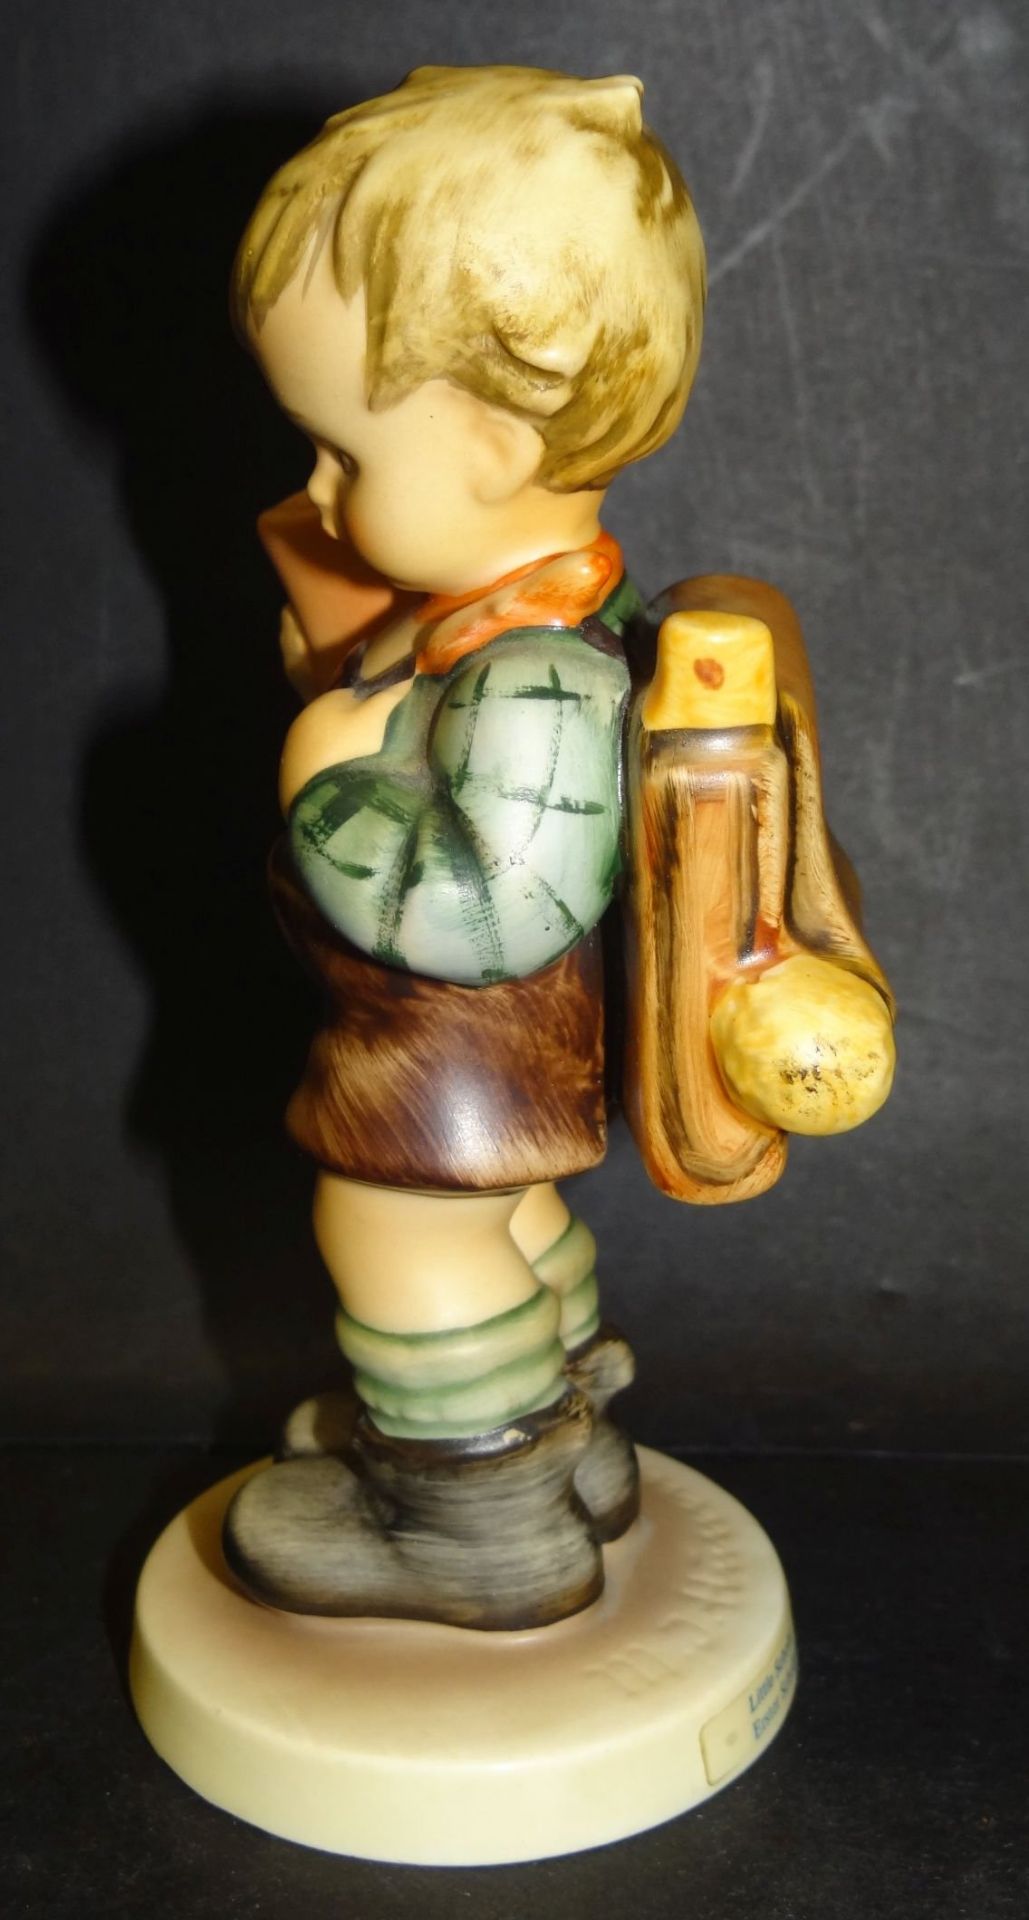 Hummel-Figur "Erster Schulgang, Junge" bemalt, H-14 cm, Unterseite Standring mit Abplatzer - Bild 2 aus 8